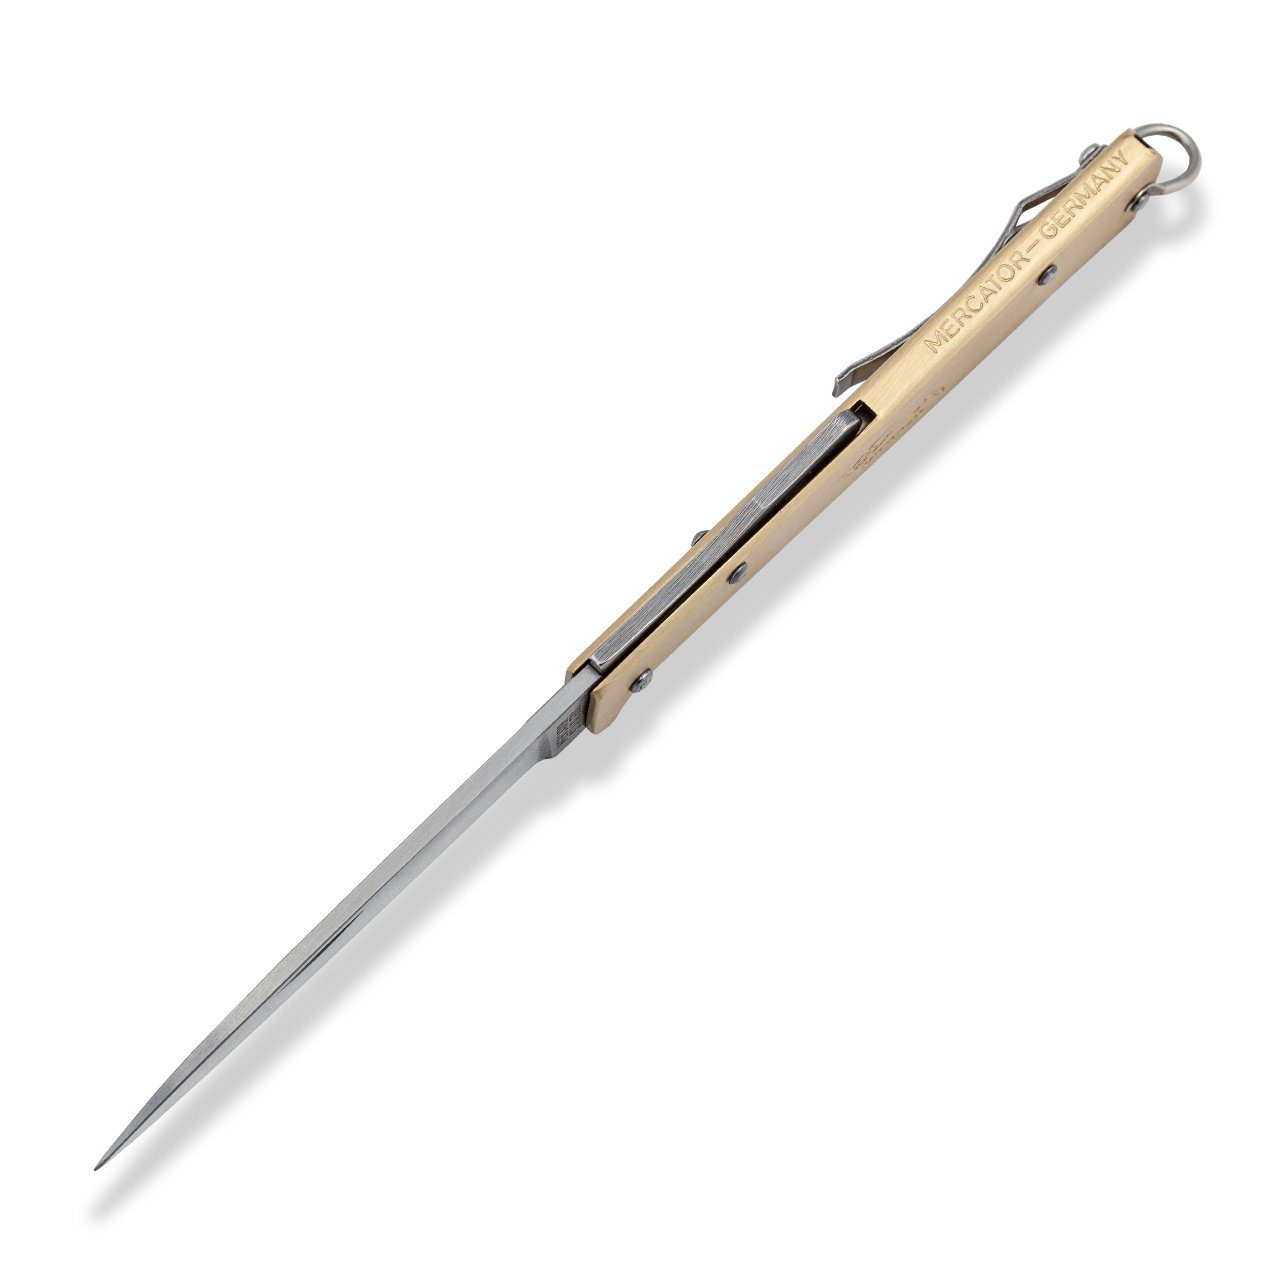 Taschenmesser Klinge Messer Messing mit Mercator-Messer groß Backlock rostfrei, Otter Clip,